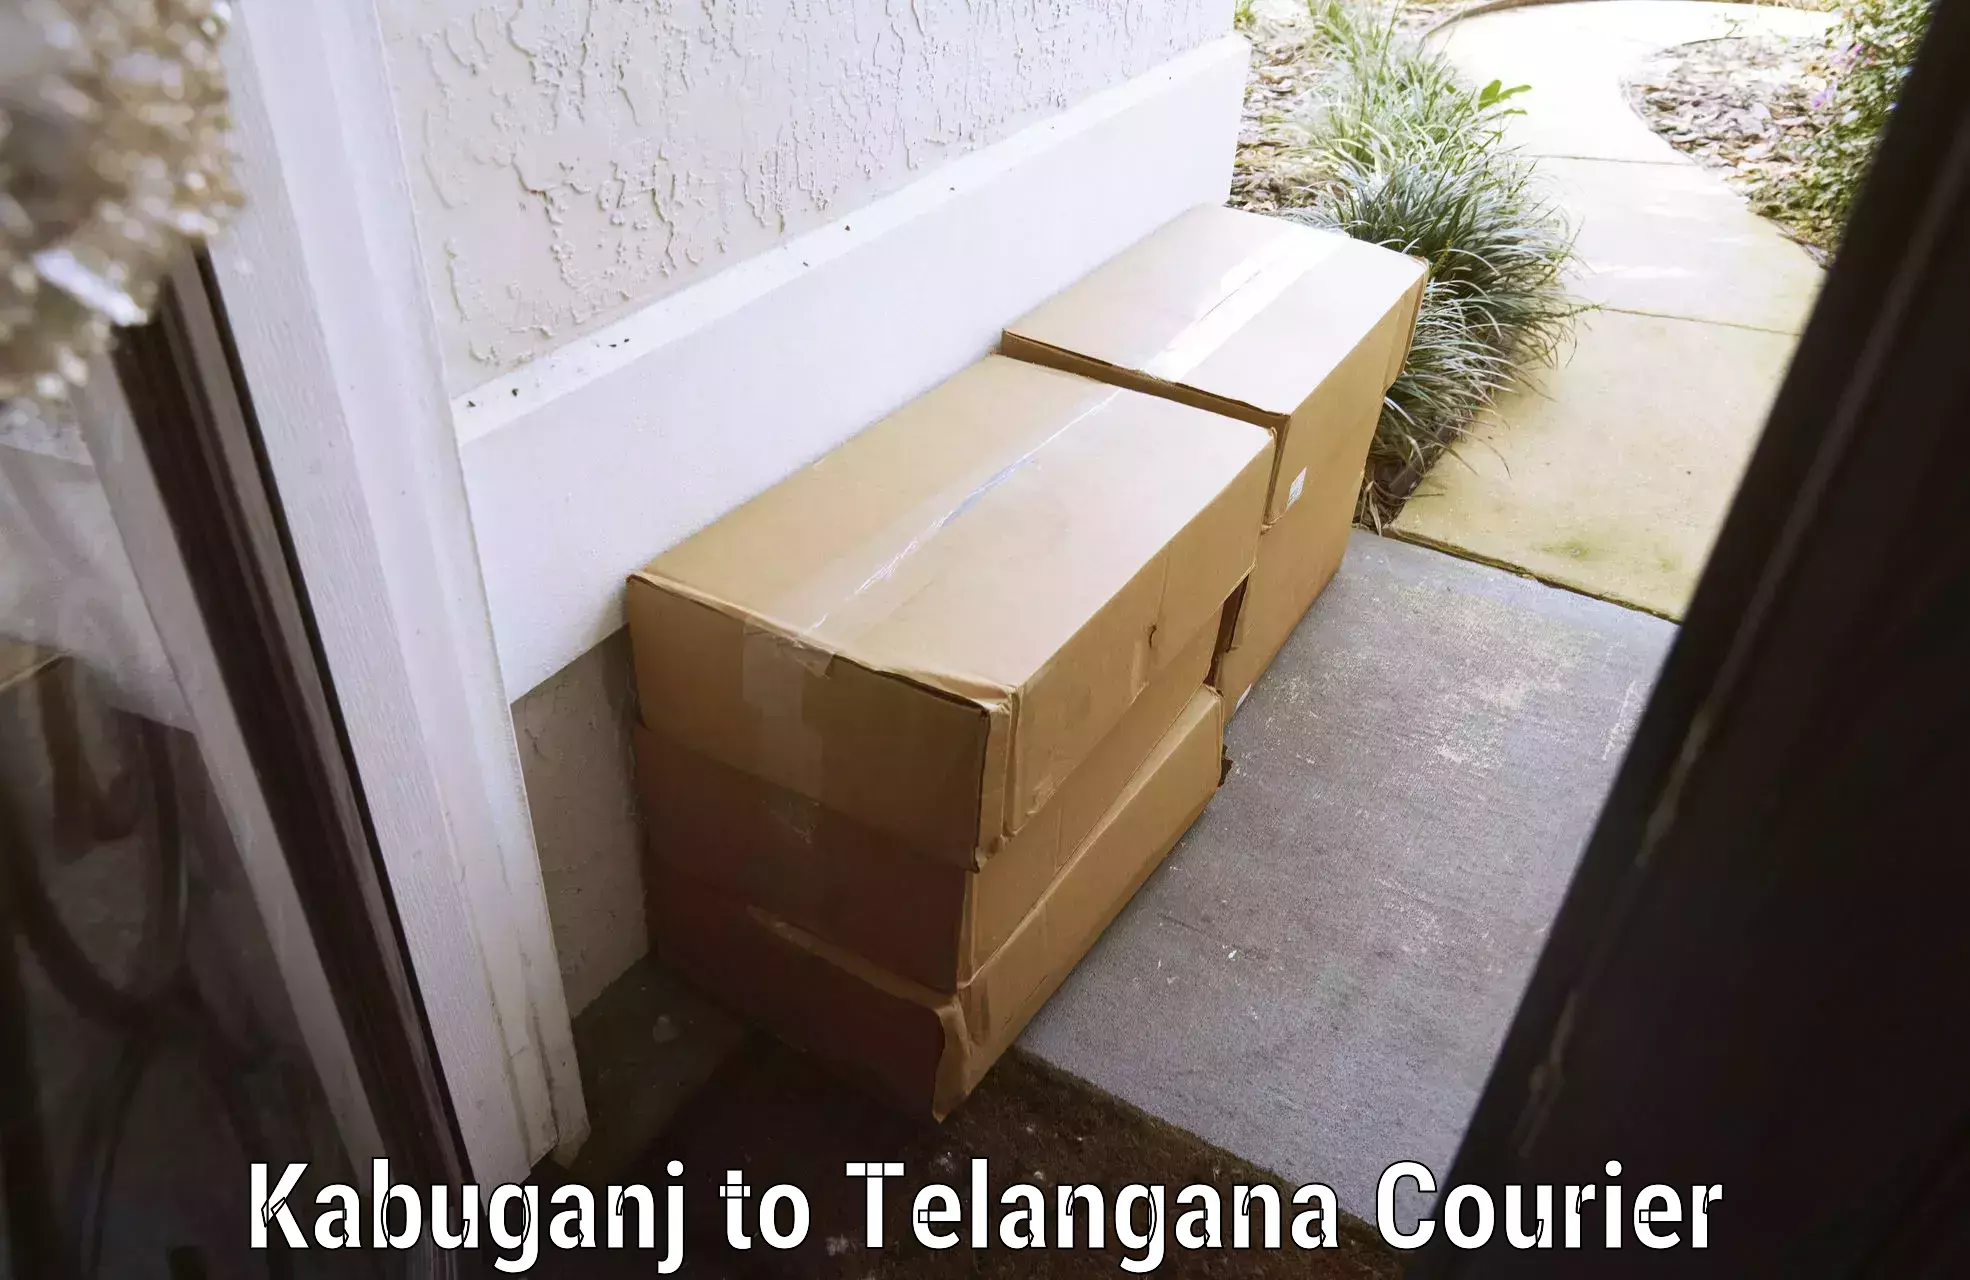 Luggage transport company Kabuganj to Telangana